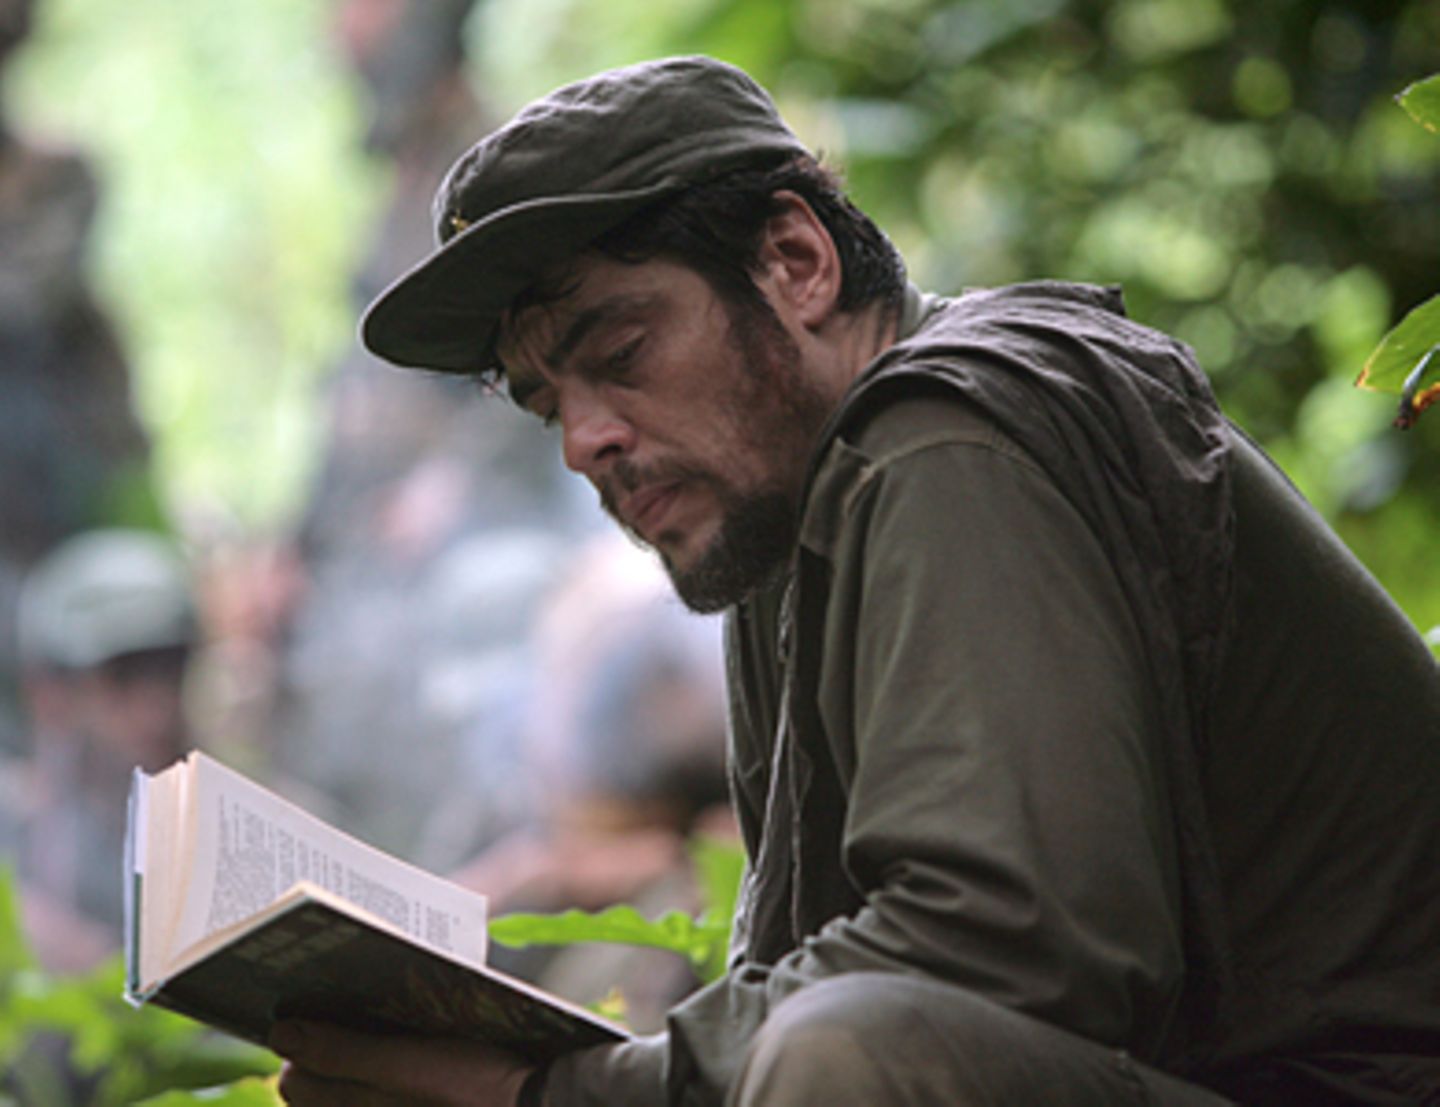 Che - Revolución Bücher sind für Che Guevara (Benicio Del Toro) wichtige Begleiter. Auch seine Mit-Revolutionäre müssen Lesen und Schreiben lernen.